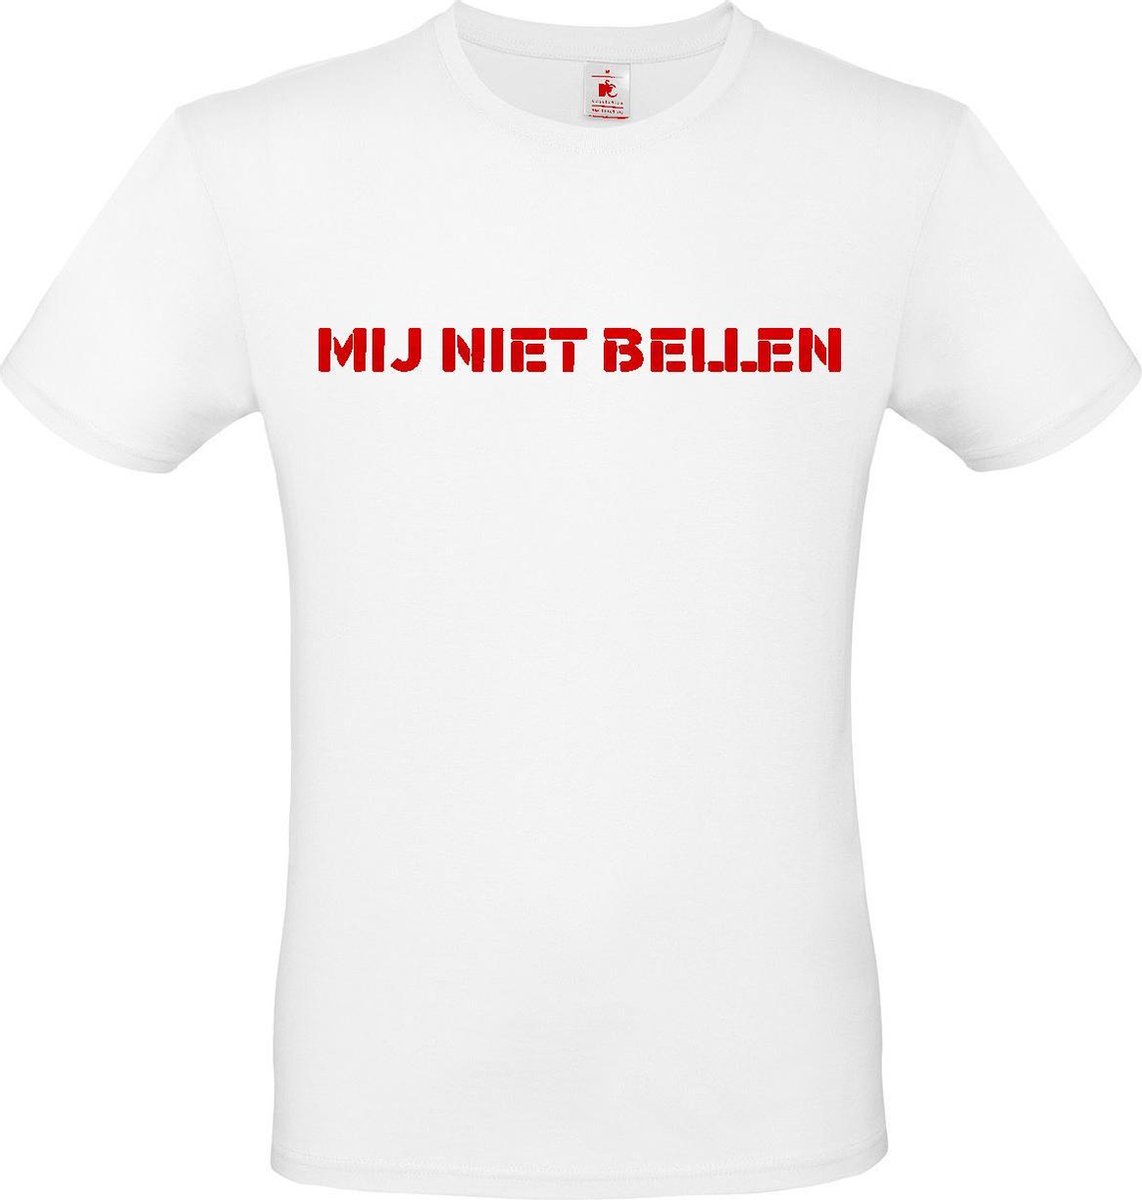 T-shirt met opdruk “Mij niet bellen”, Wit T-shirt met rode opdruk. | Chateau Meiland | Martien Meiland | BC custom